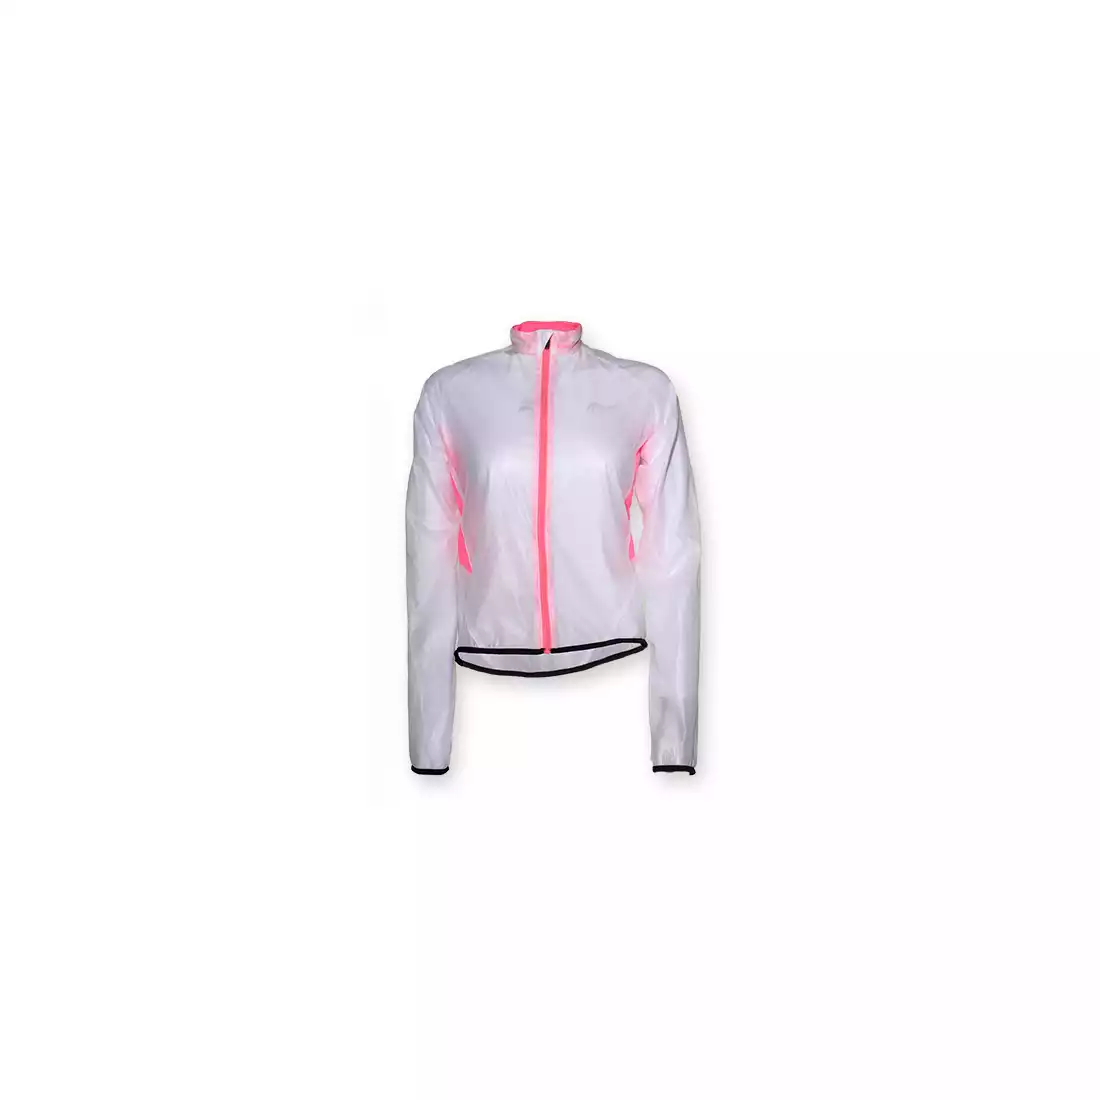 ROGELLI CANELLI damska kurtka rowerowa, przeciwdeszczowa, kolor: transparent-pink 